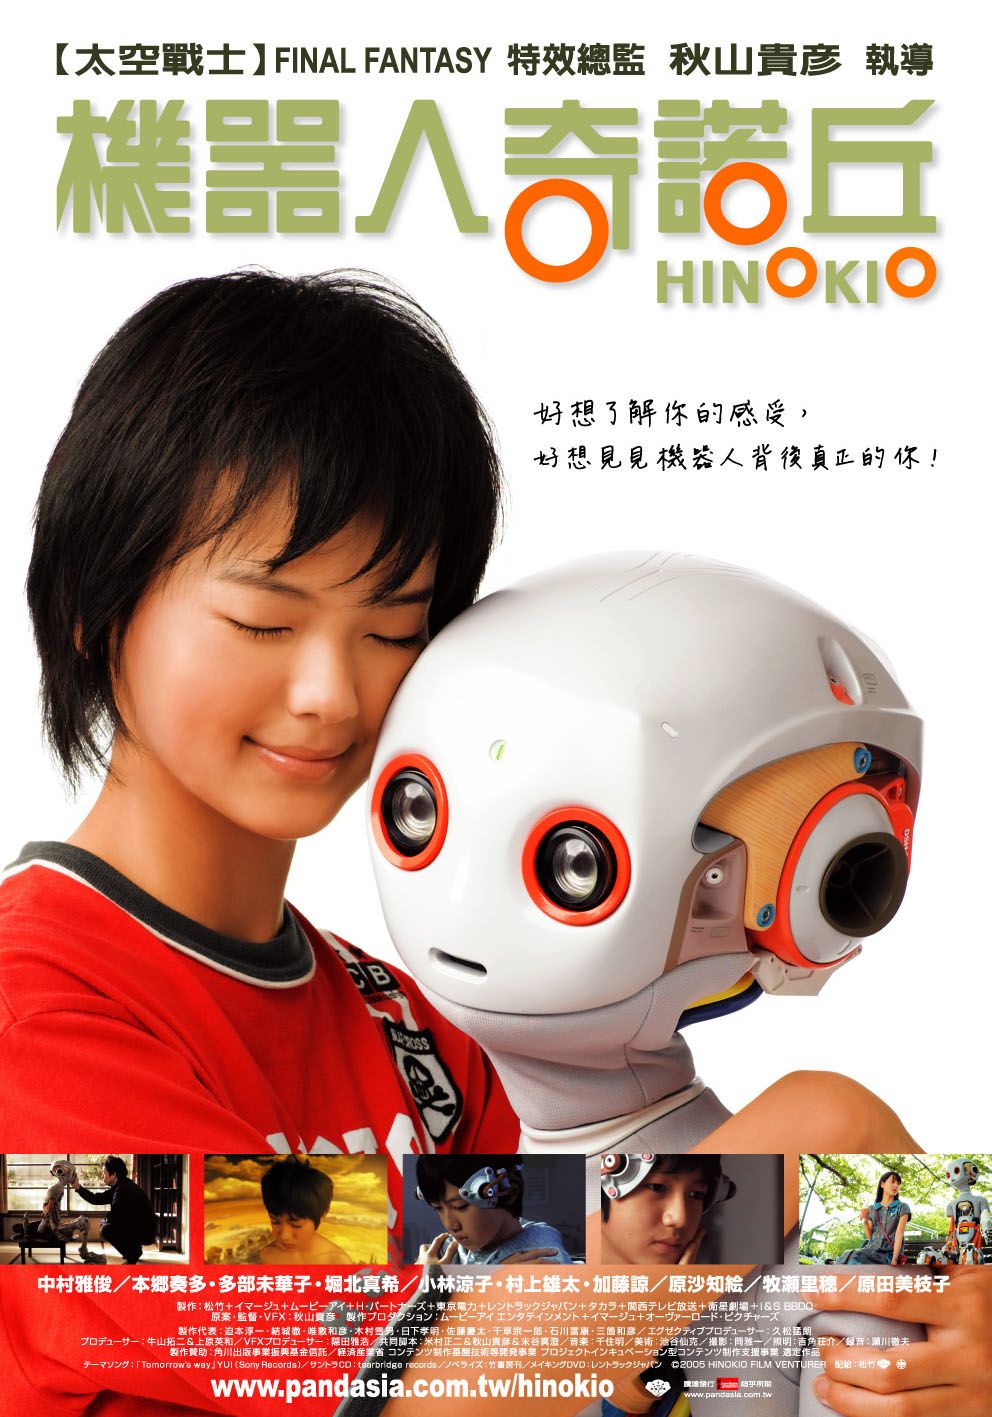 Extra Large Movie Poster Image for Hinokio 